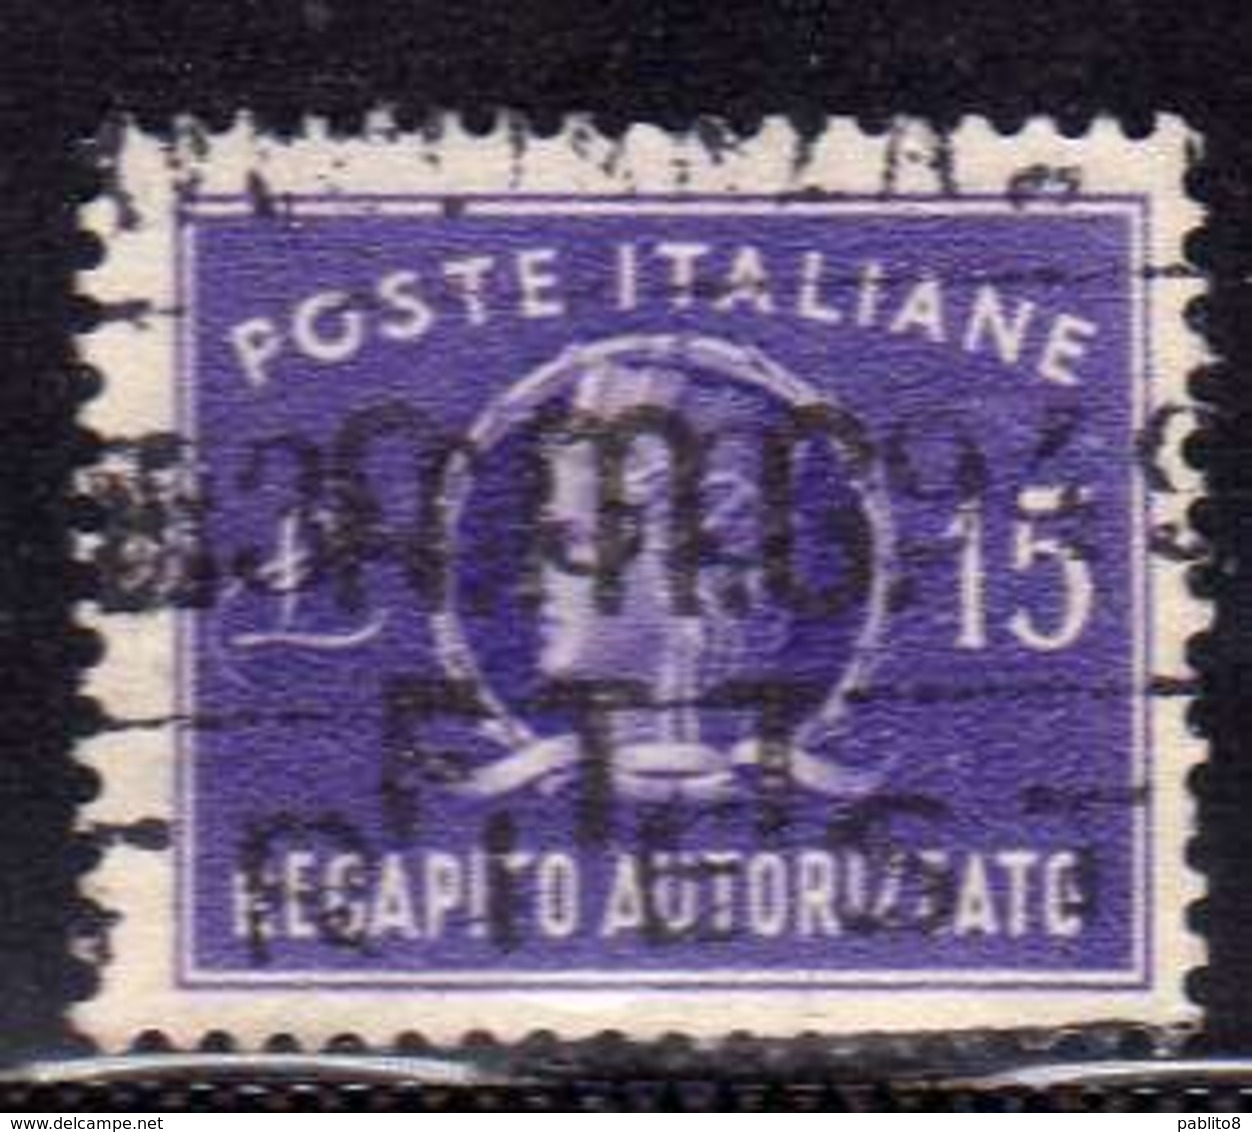 TRIESTE A 1949 AMG - FTT ITALIA ITALY OVERPRINTED RECAPITO AUTORIZZATO LIRE 15 USATO USED OBLITERE' - Fiscali